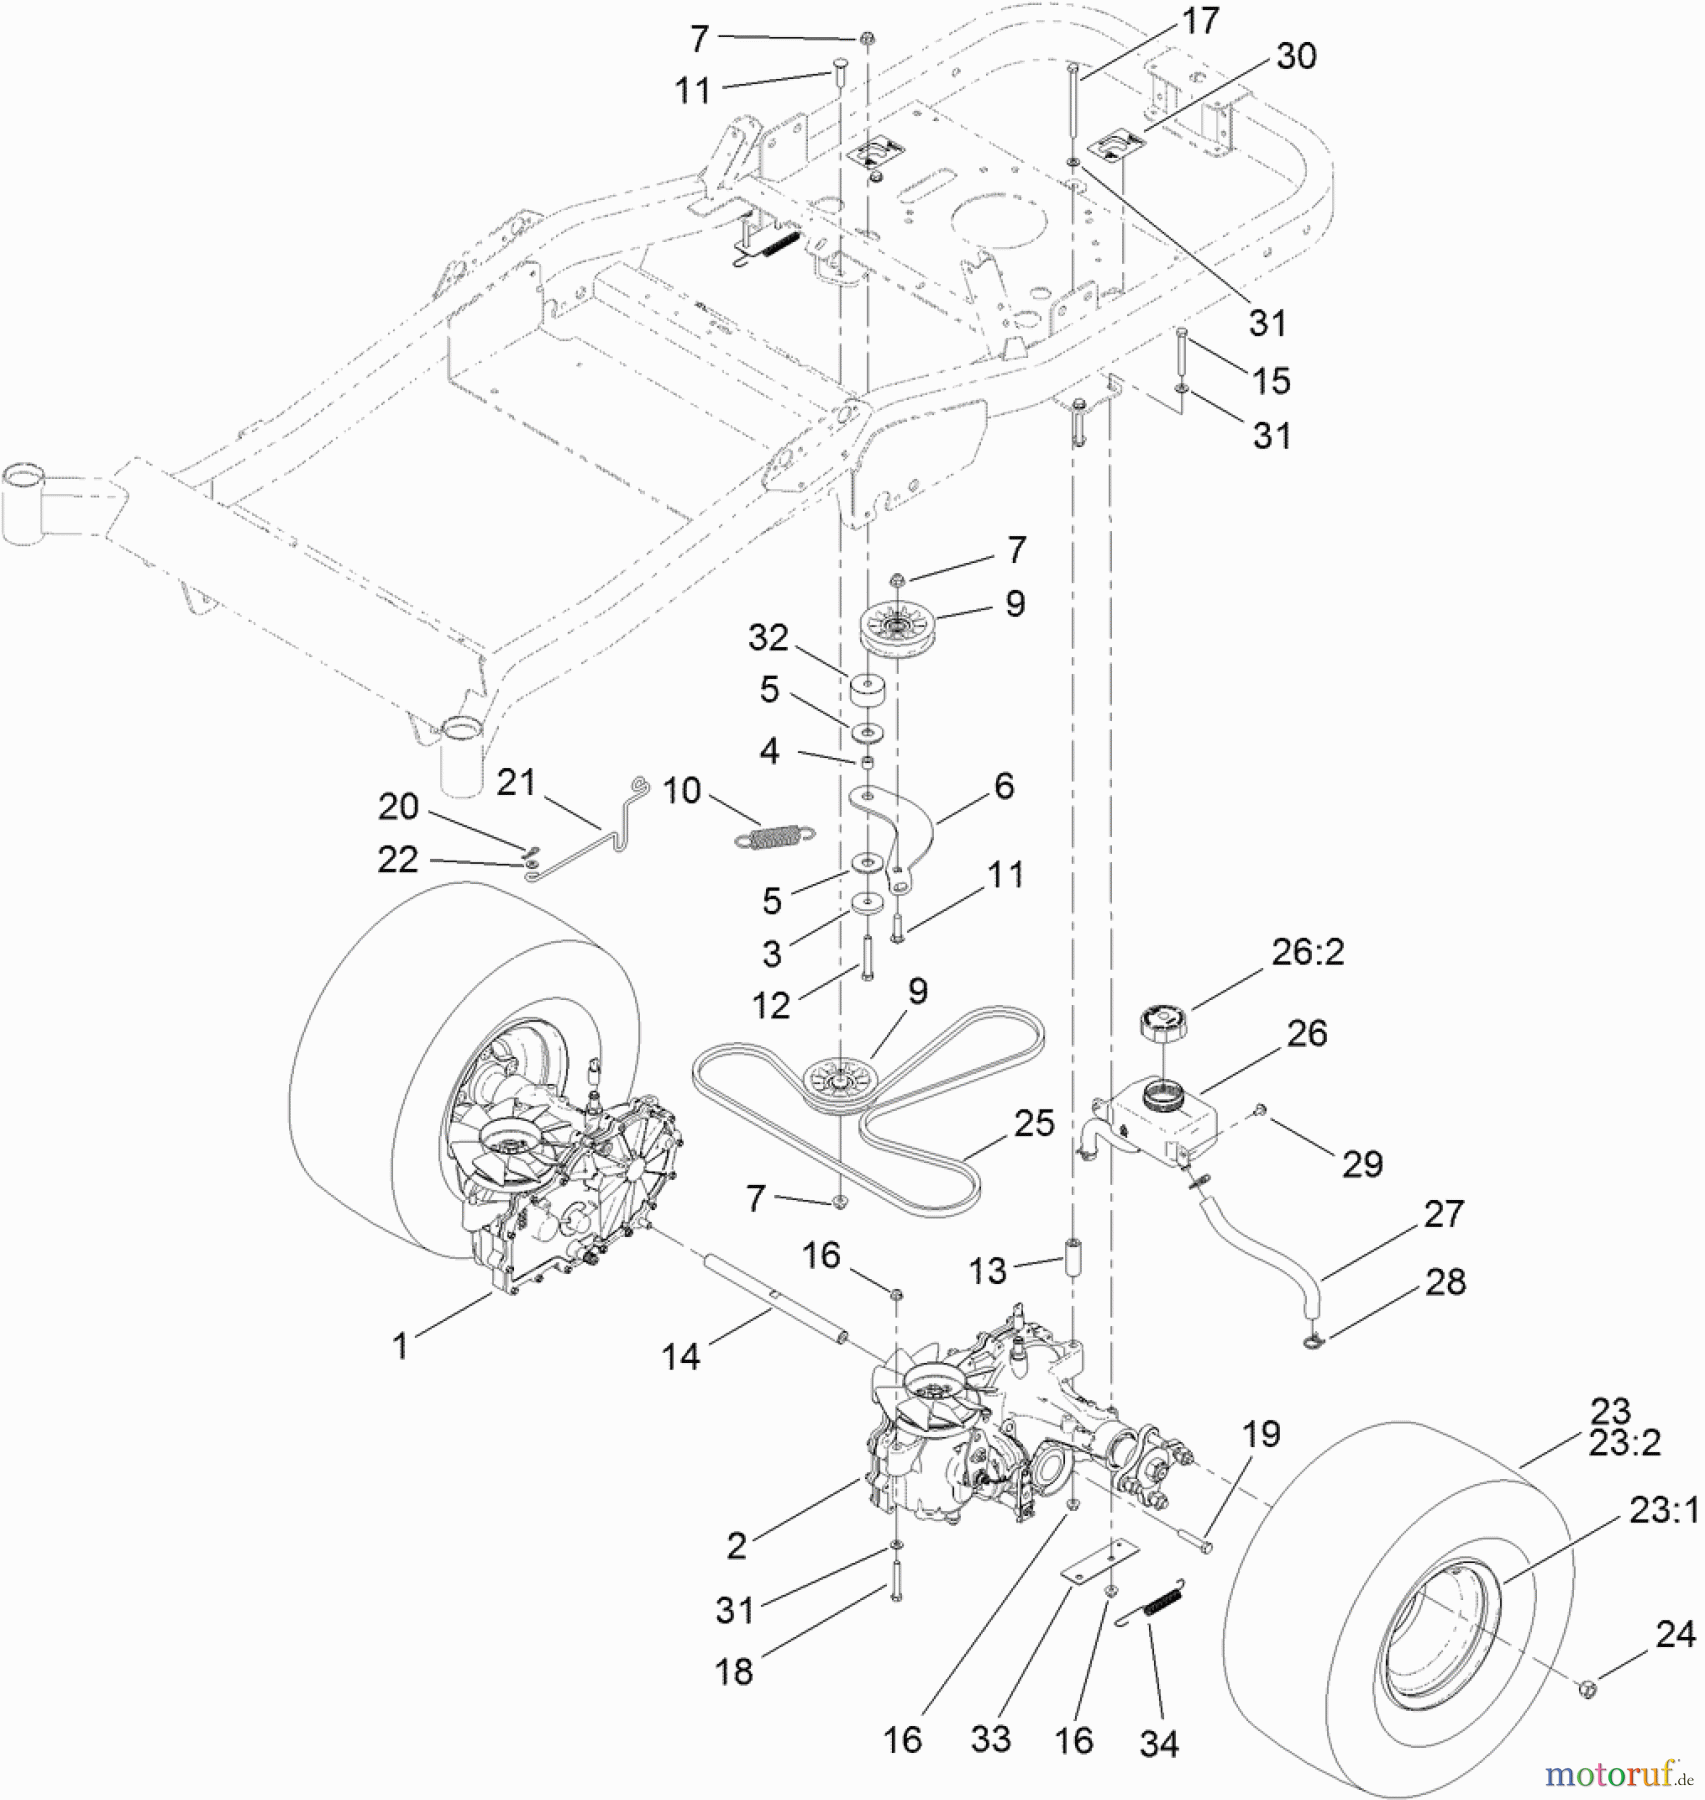  Toro Neu Mowers, Zero-Turn 74841 (ZX4820) - Toro TITAN ZX4820 Zero-Turn-Radius Riding Mower, 2011 (311000001-311999999) TRACTION DRIVE ASSEMBLY